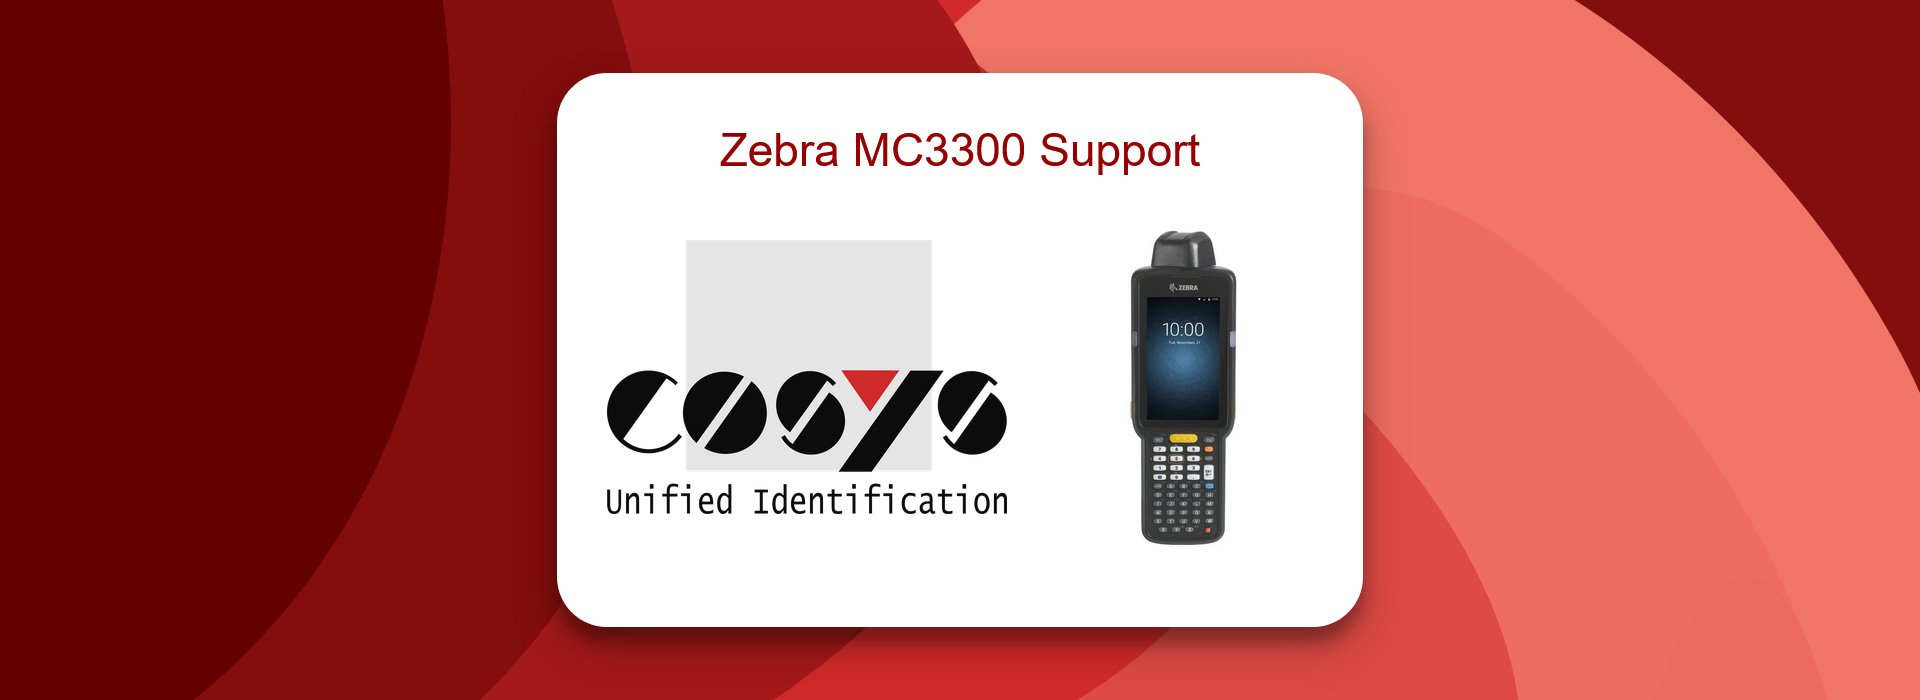 Zebra MC3300 Support für effizientere Lager